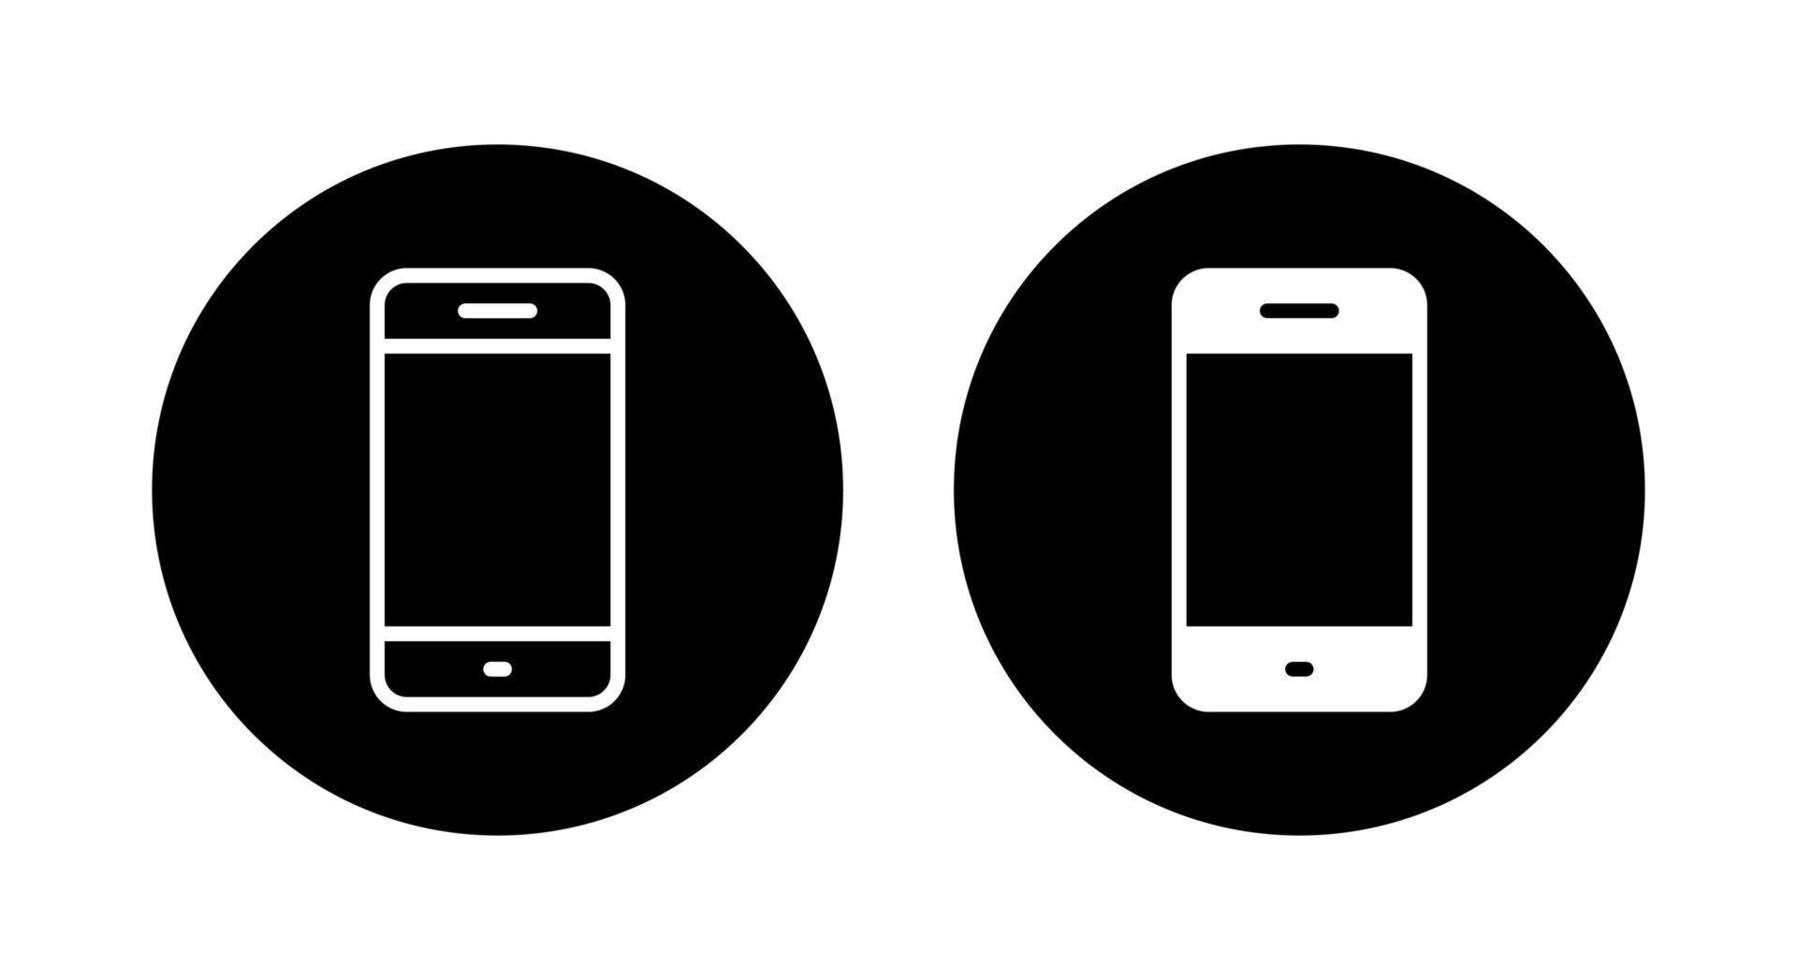 téléphone portable, smartphone, vecteur d'icône de téléphone isolé sur fond de cercle